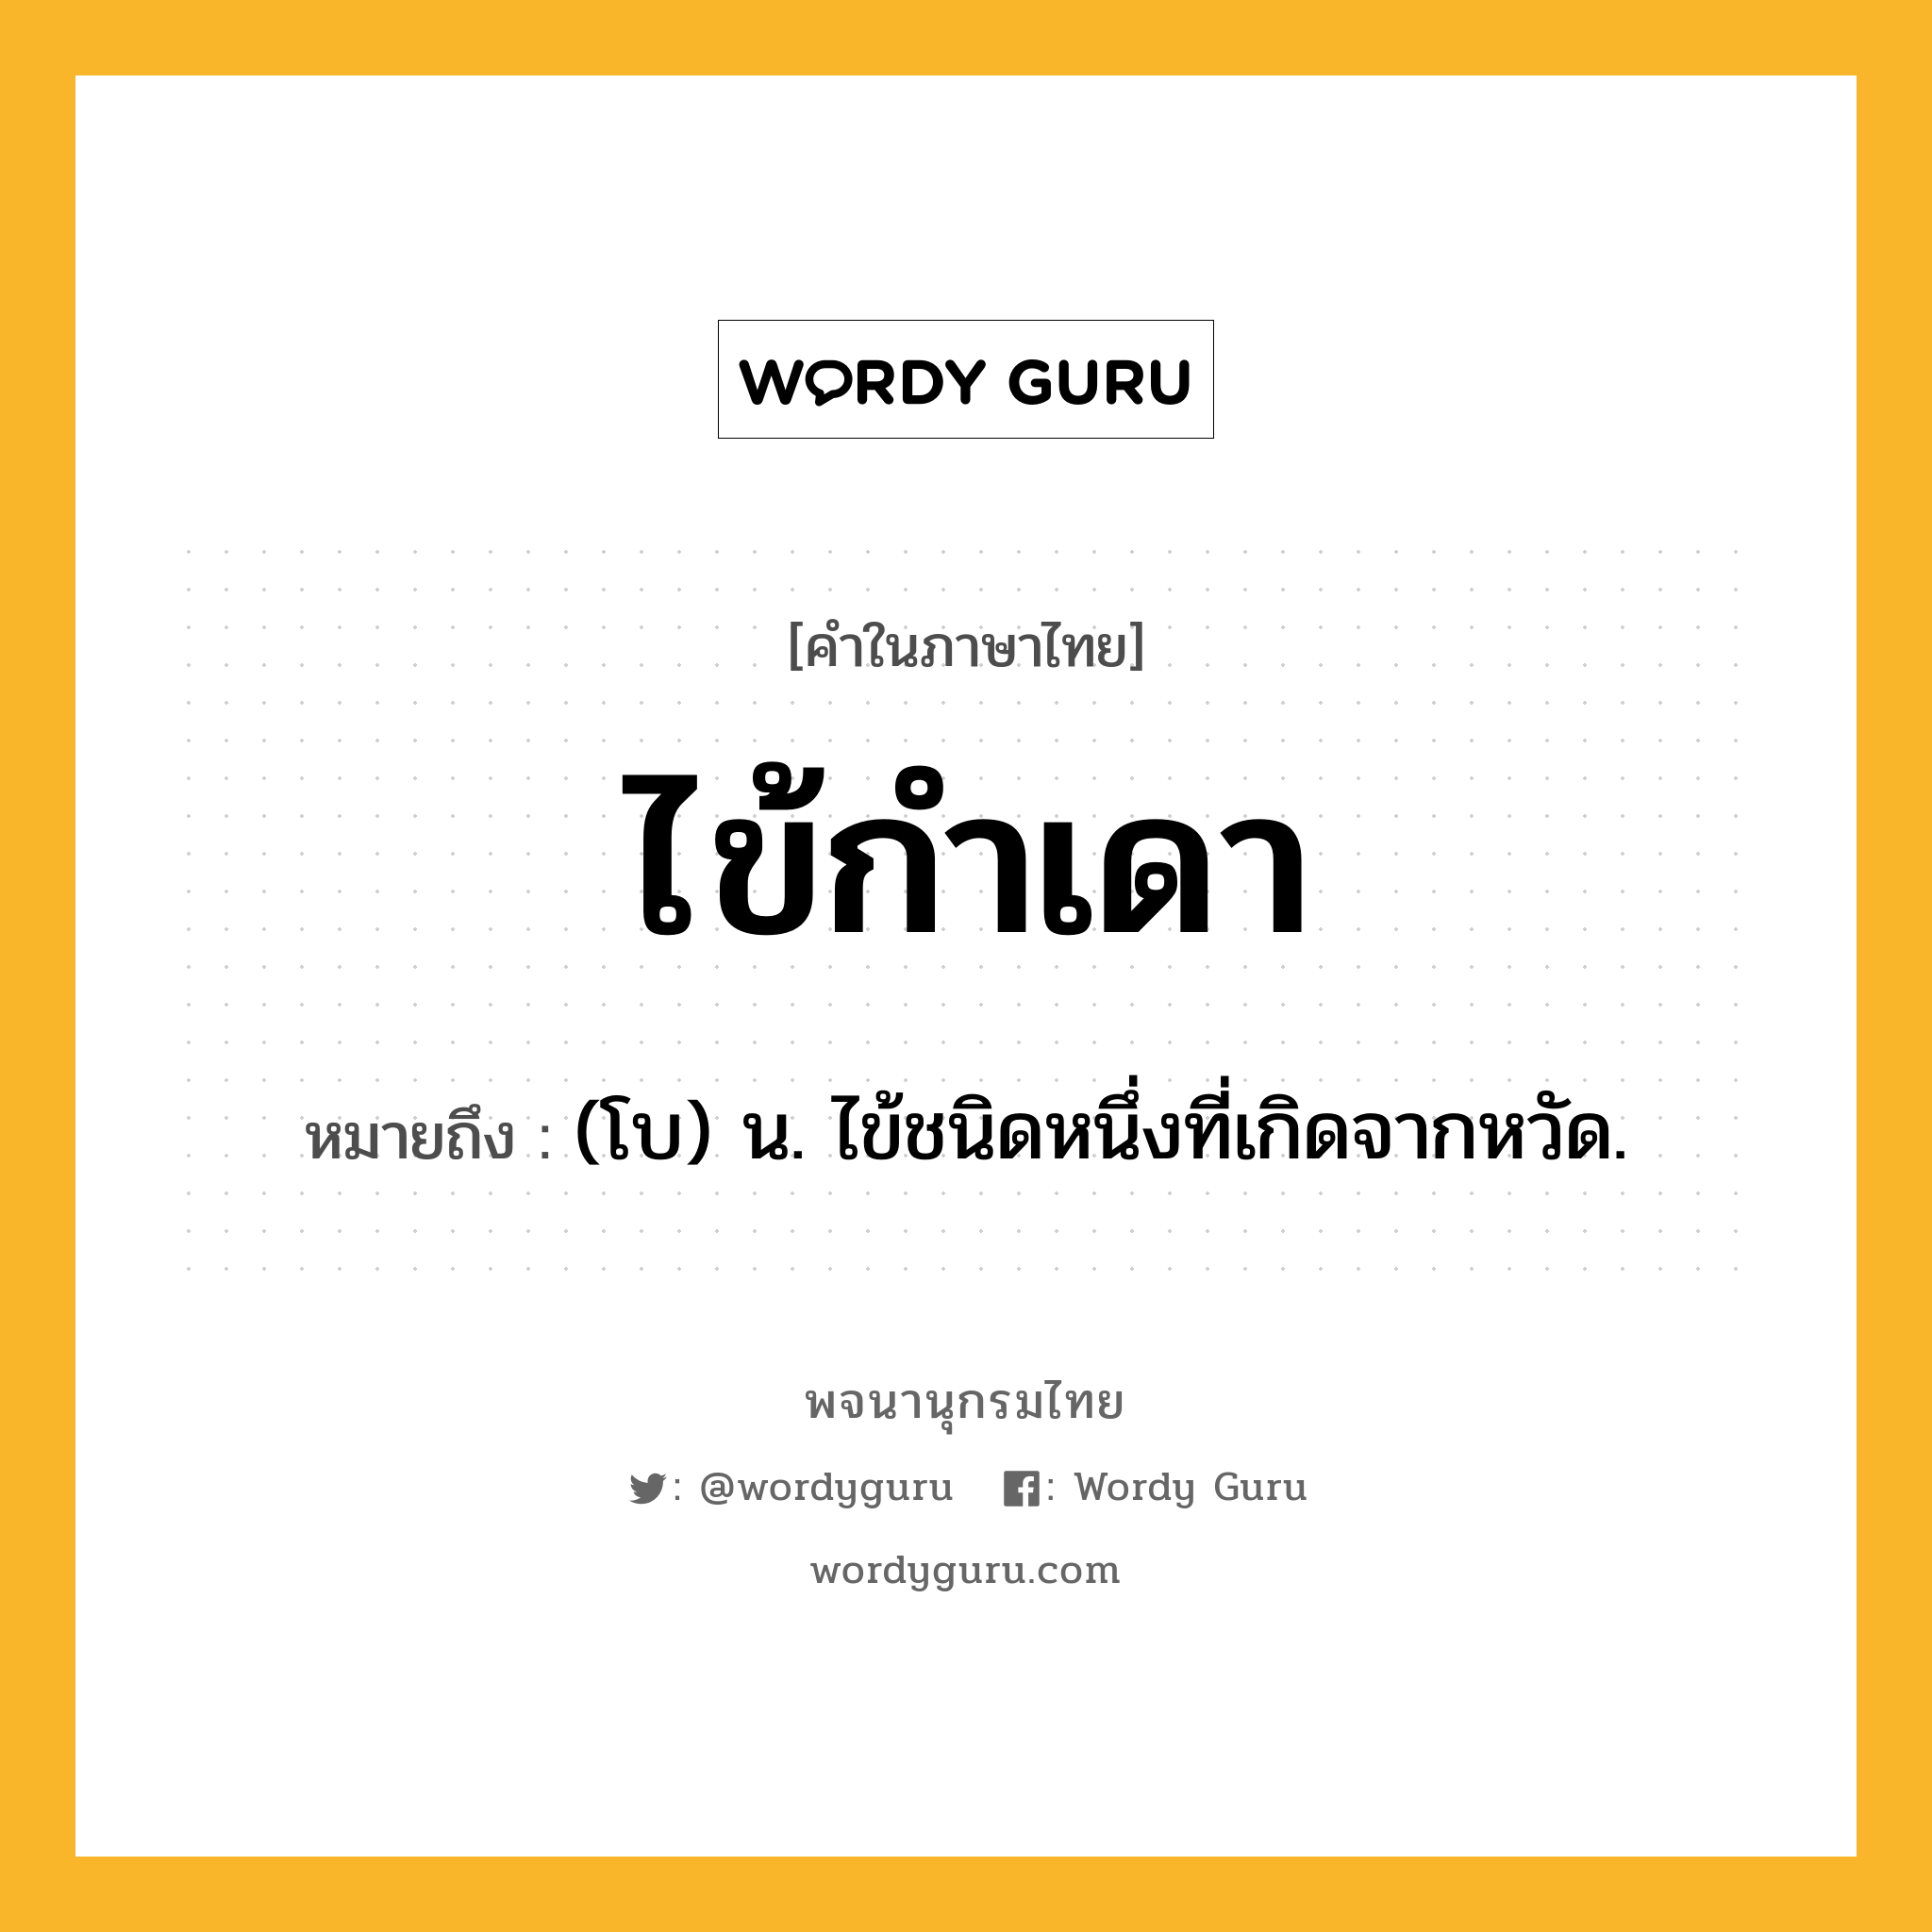 ไข้กำเดา ความหมาย หมายถึงอะไร?, คำในภาษาไทย ไข้กำเดา หมายถึง (โบ) น. ไข้ชนิดหนึ่งที่เกิดจากหวัด.